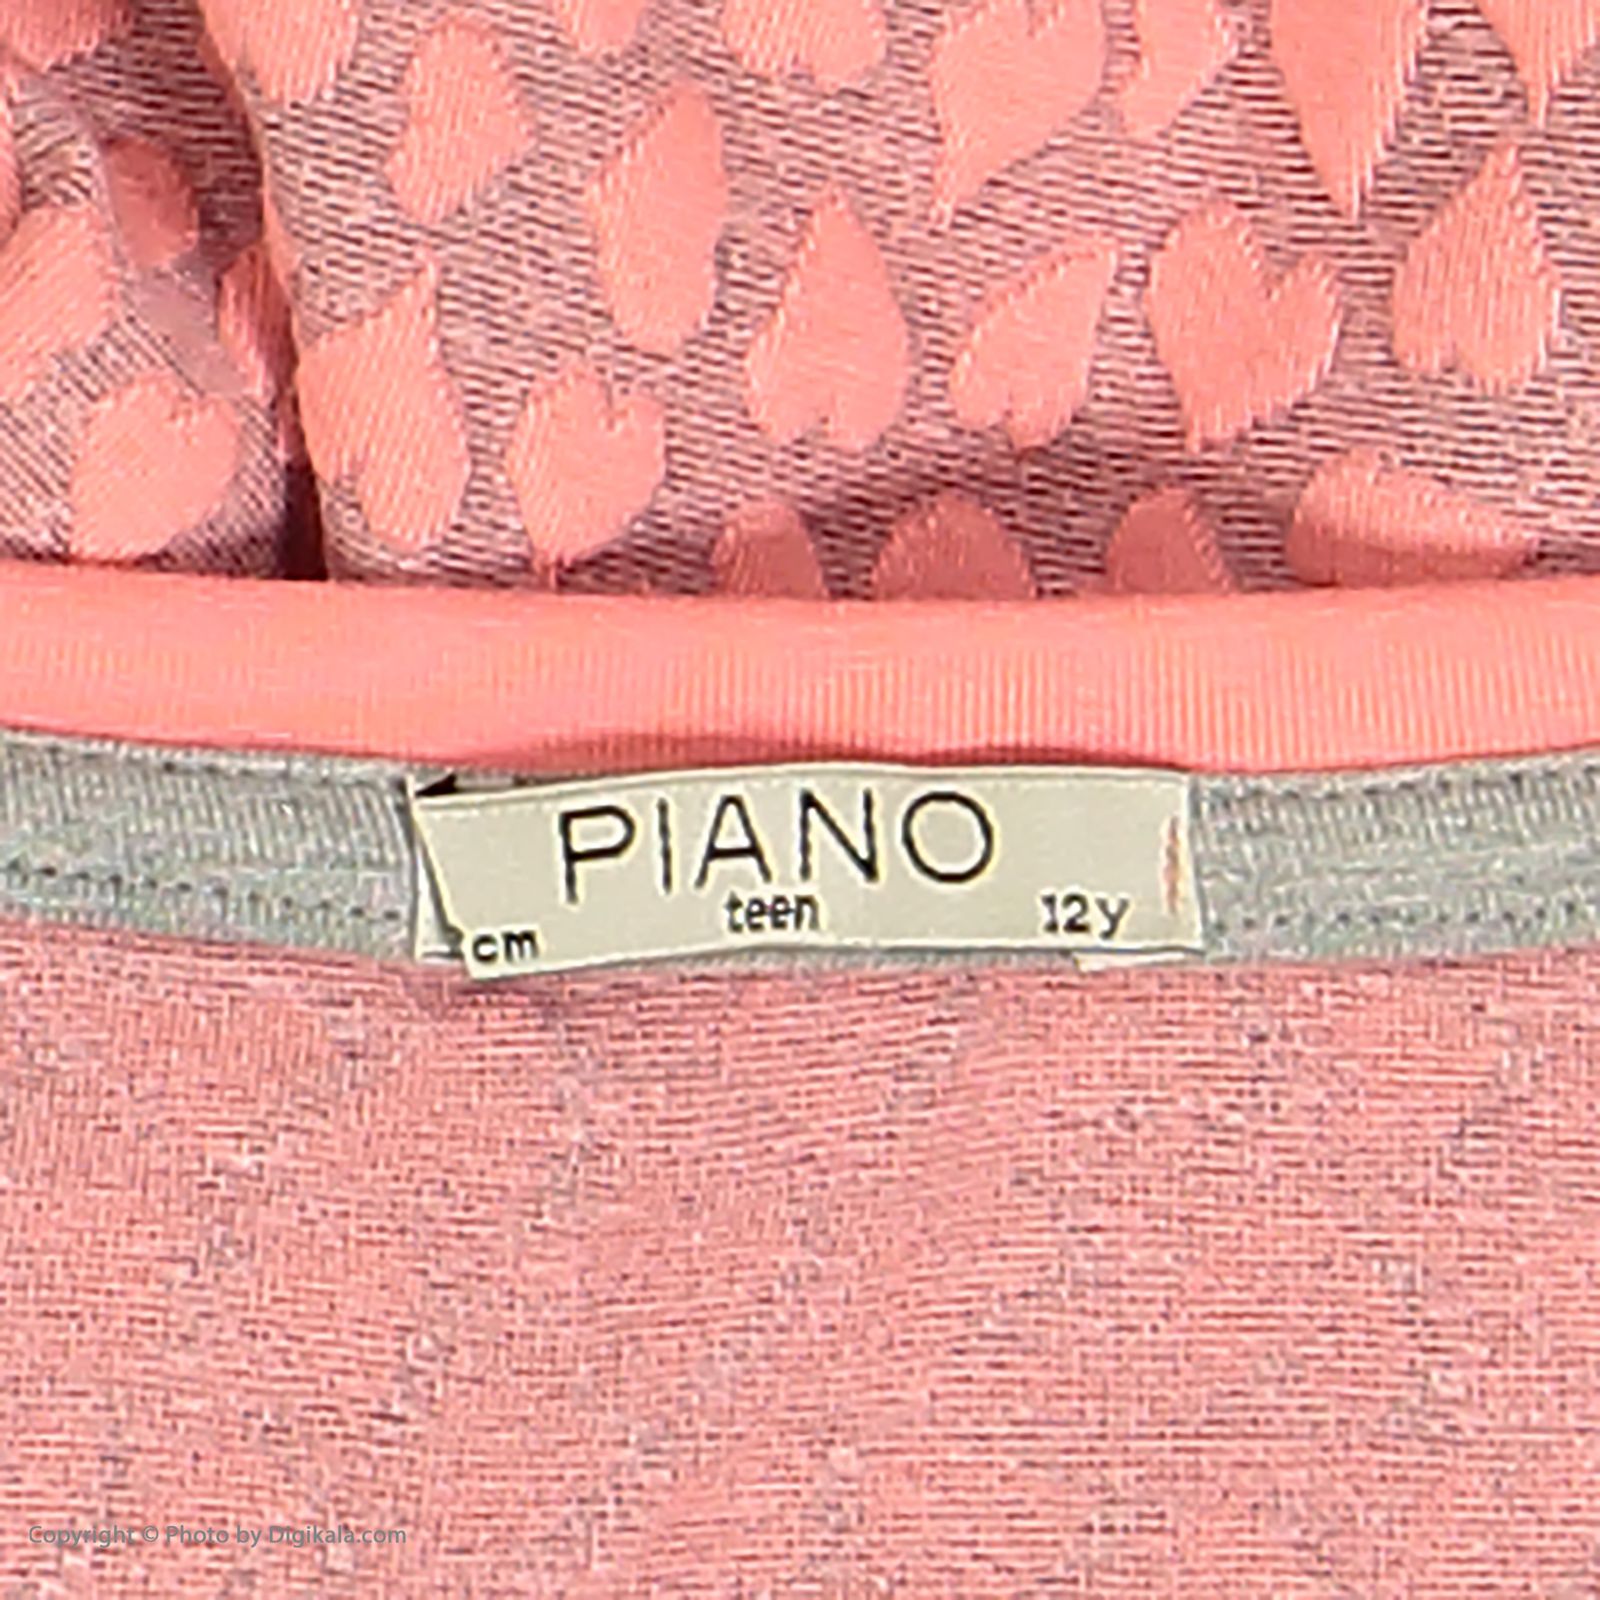 تی شرت دخترانه پیانو مدل 01816-84 -  - 5